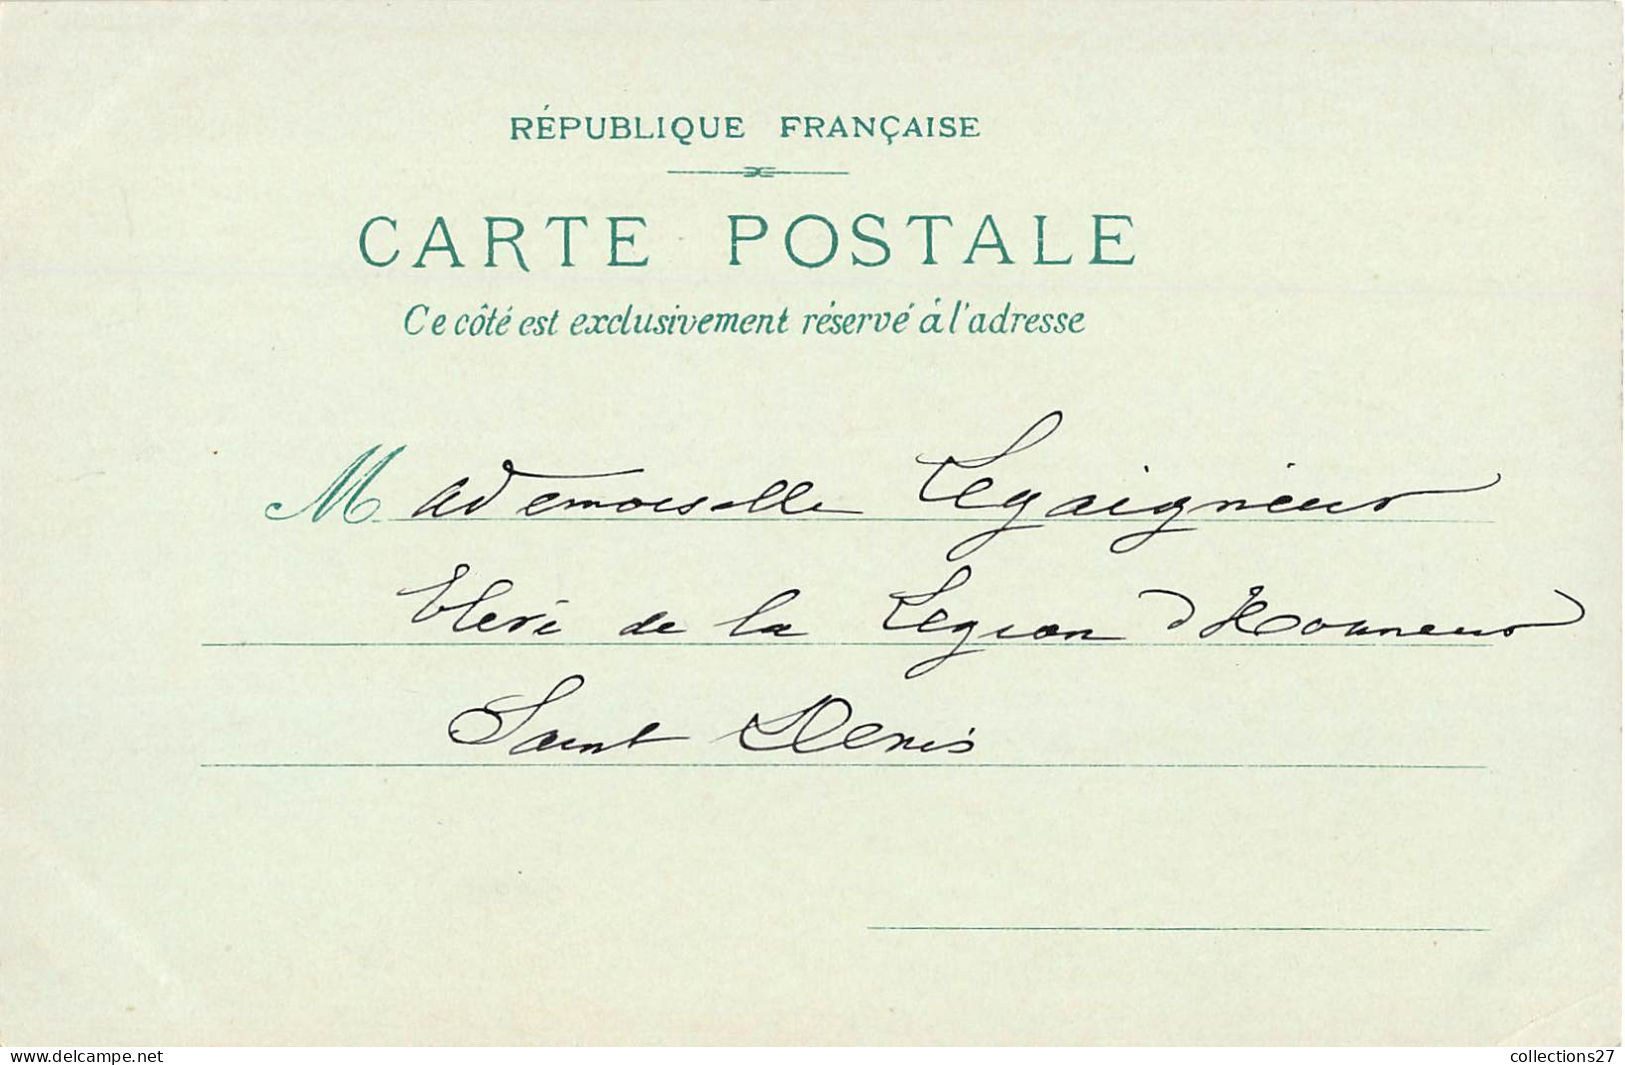 PARIS- 8 CARTES - EXPOSITION UNIVERSLLE 1900 -baschet editeur